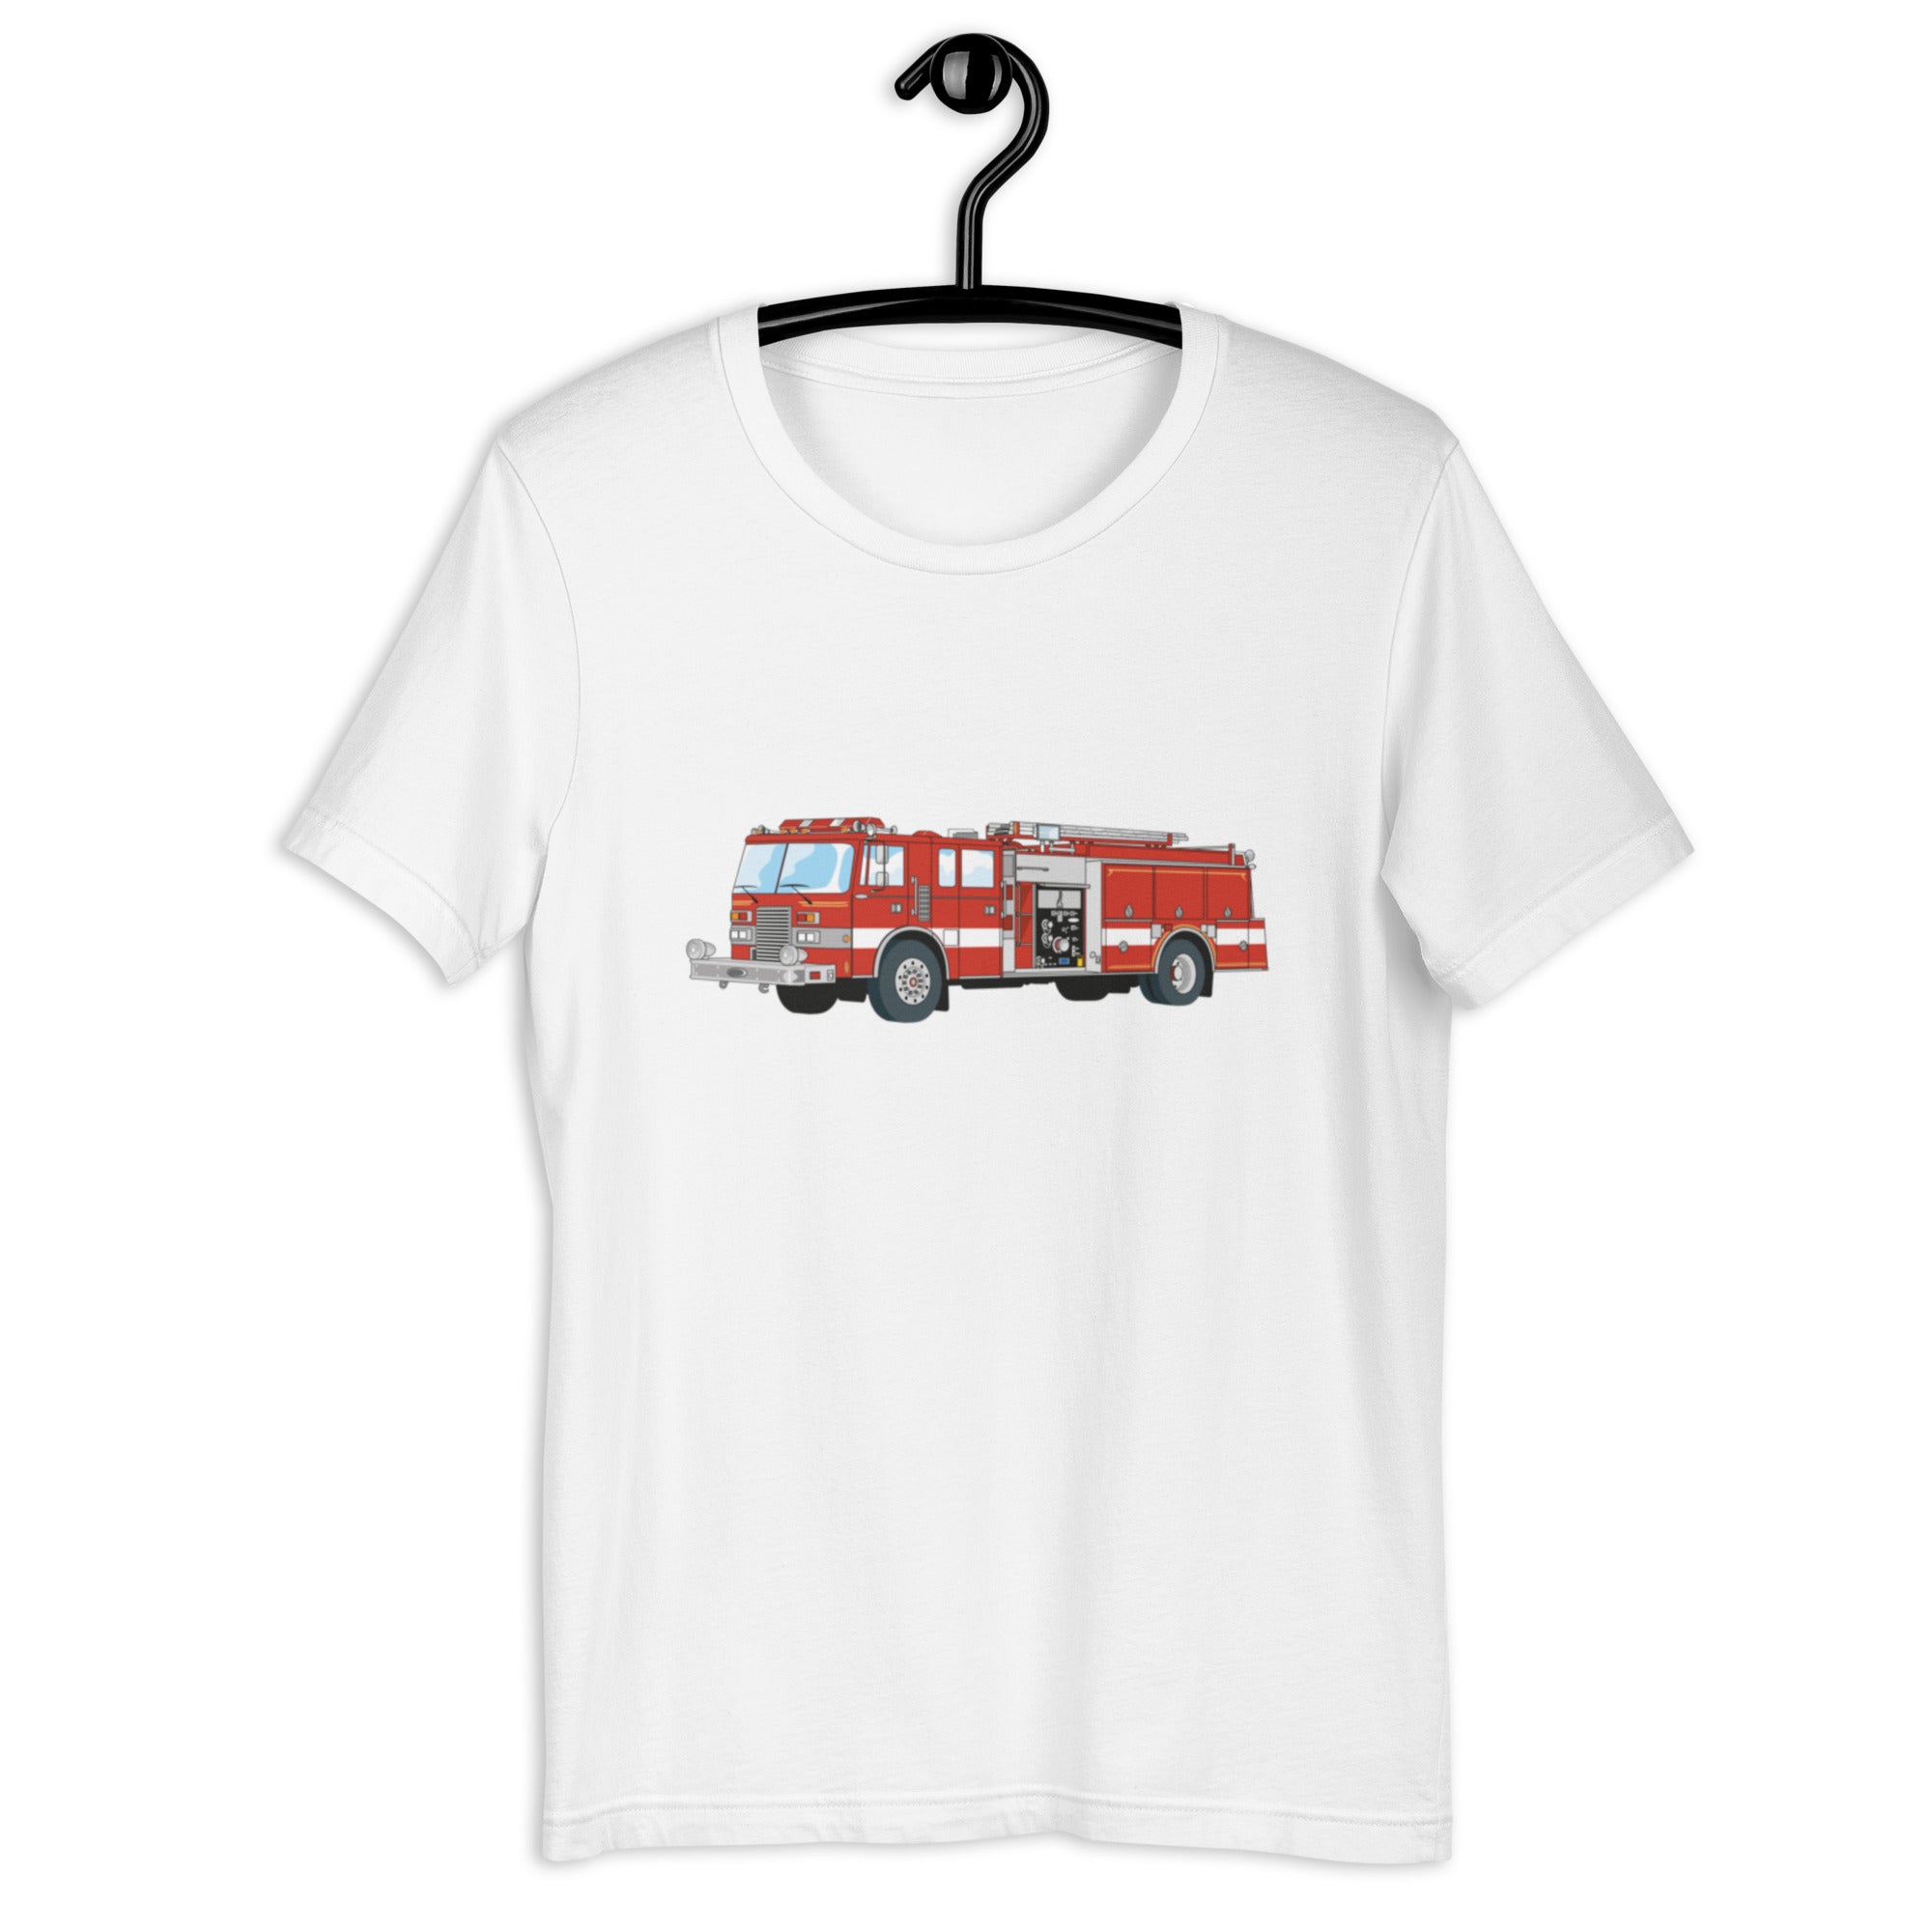 The "FIRE TRUCK" T-Shirt